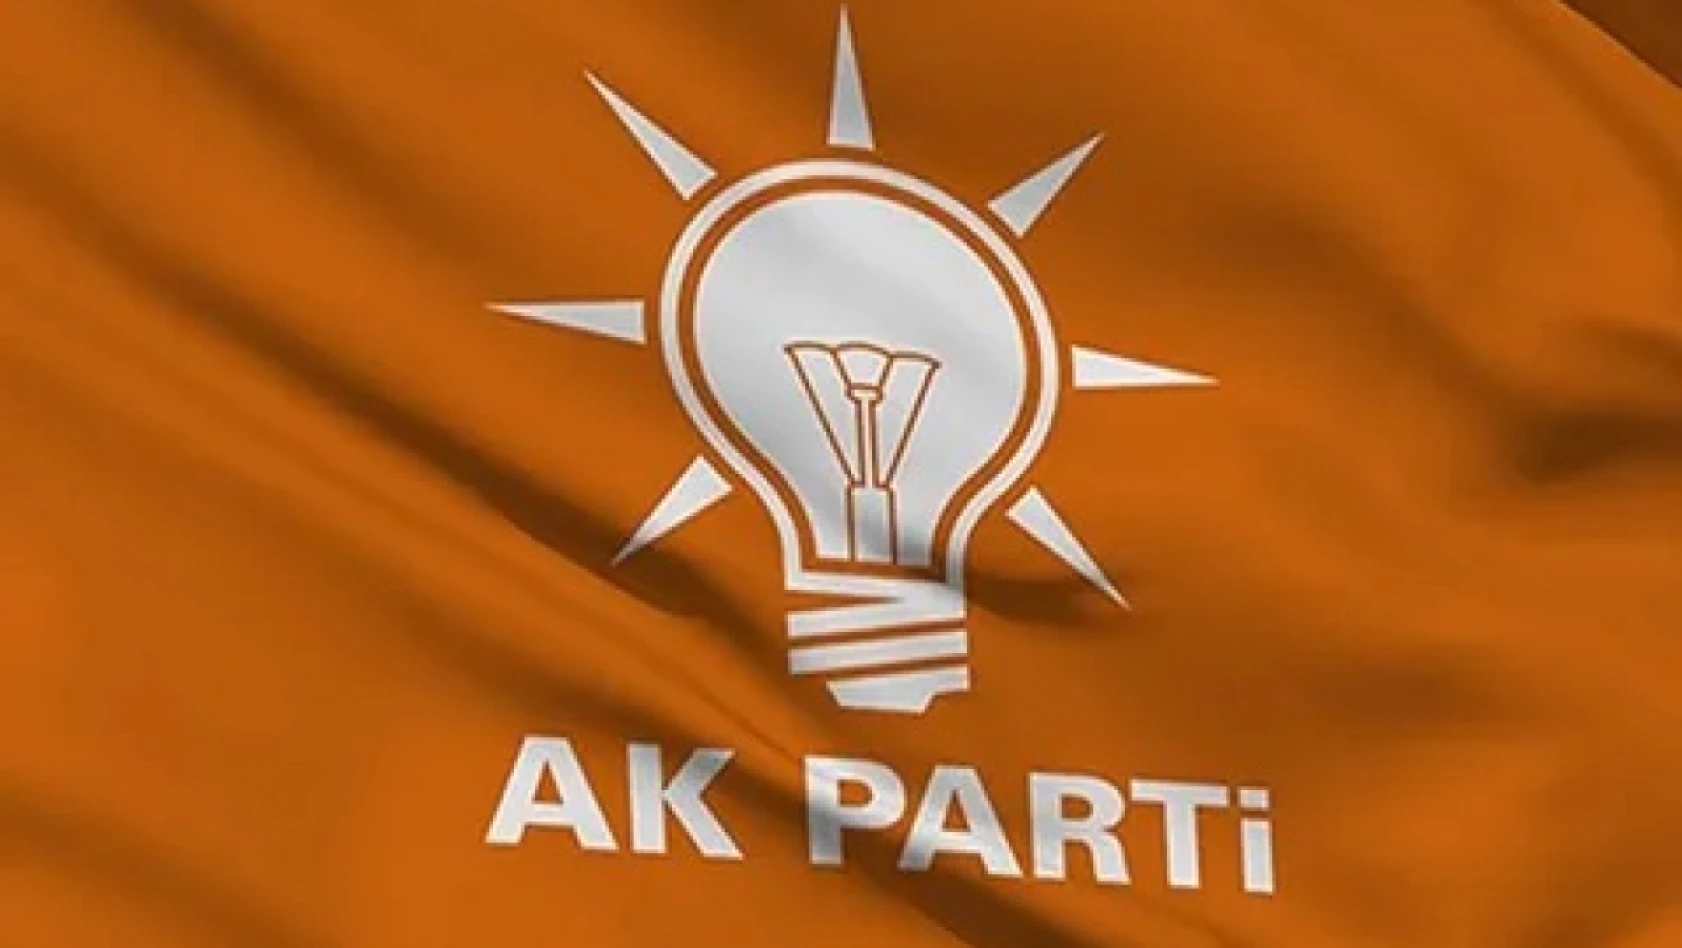 Flaş! Toplu Şekilde AK Parti'ye Geçtiler